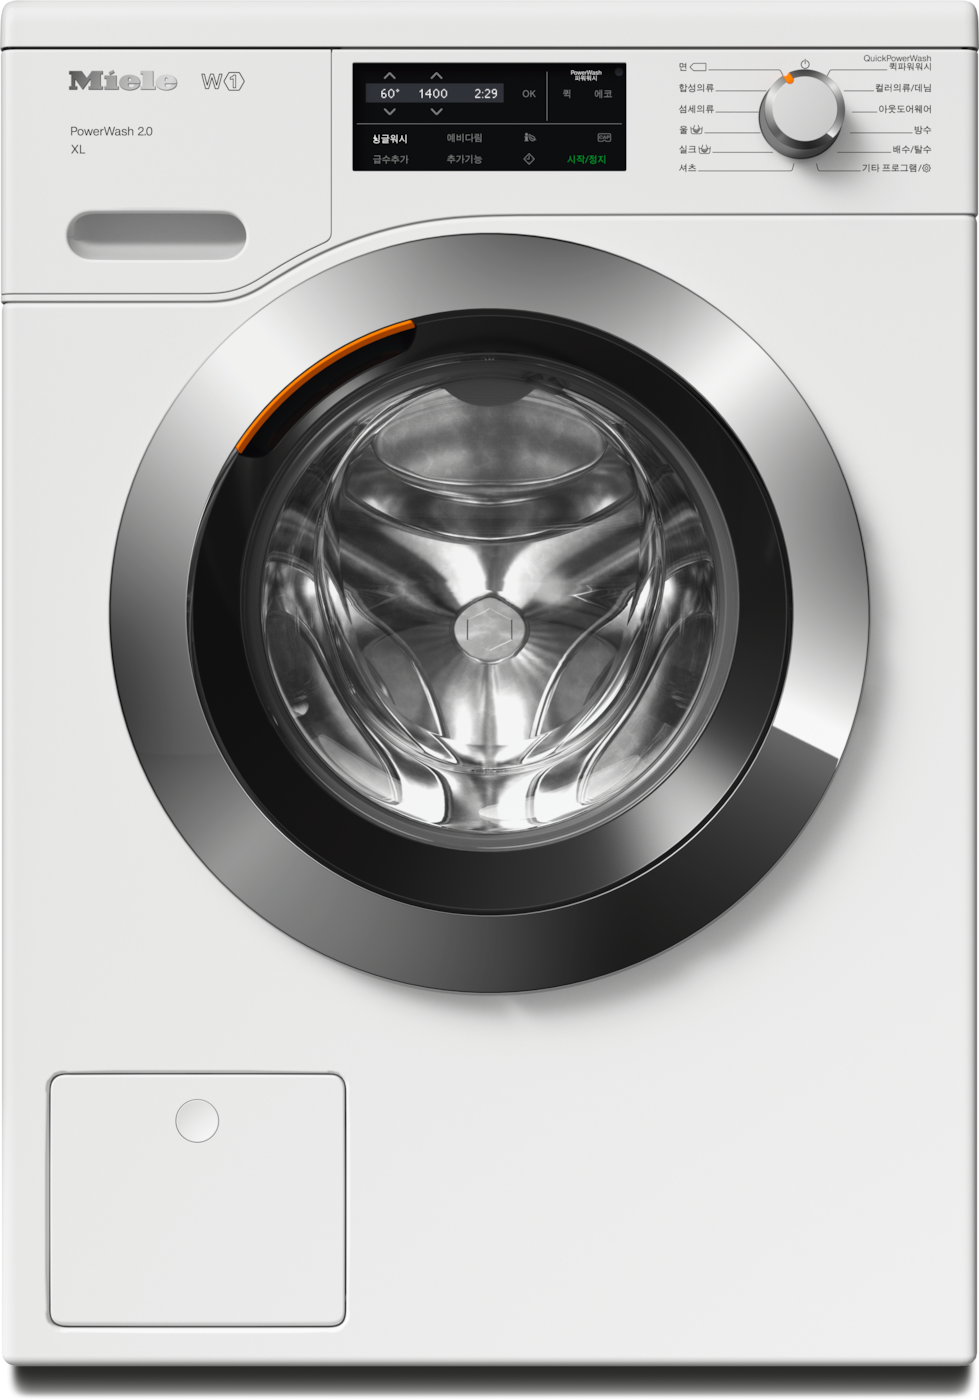 WCI 320 PWash 2.0 XL - W1 드럼 세탁기: 